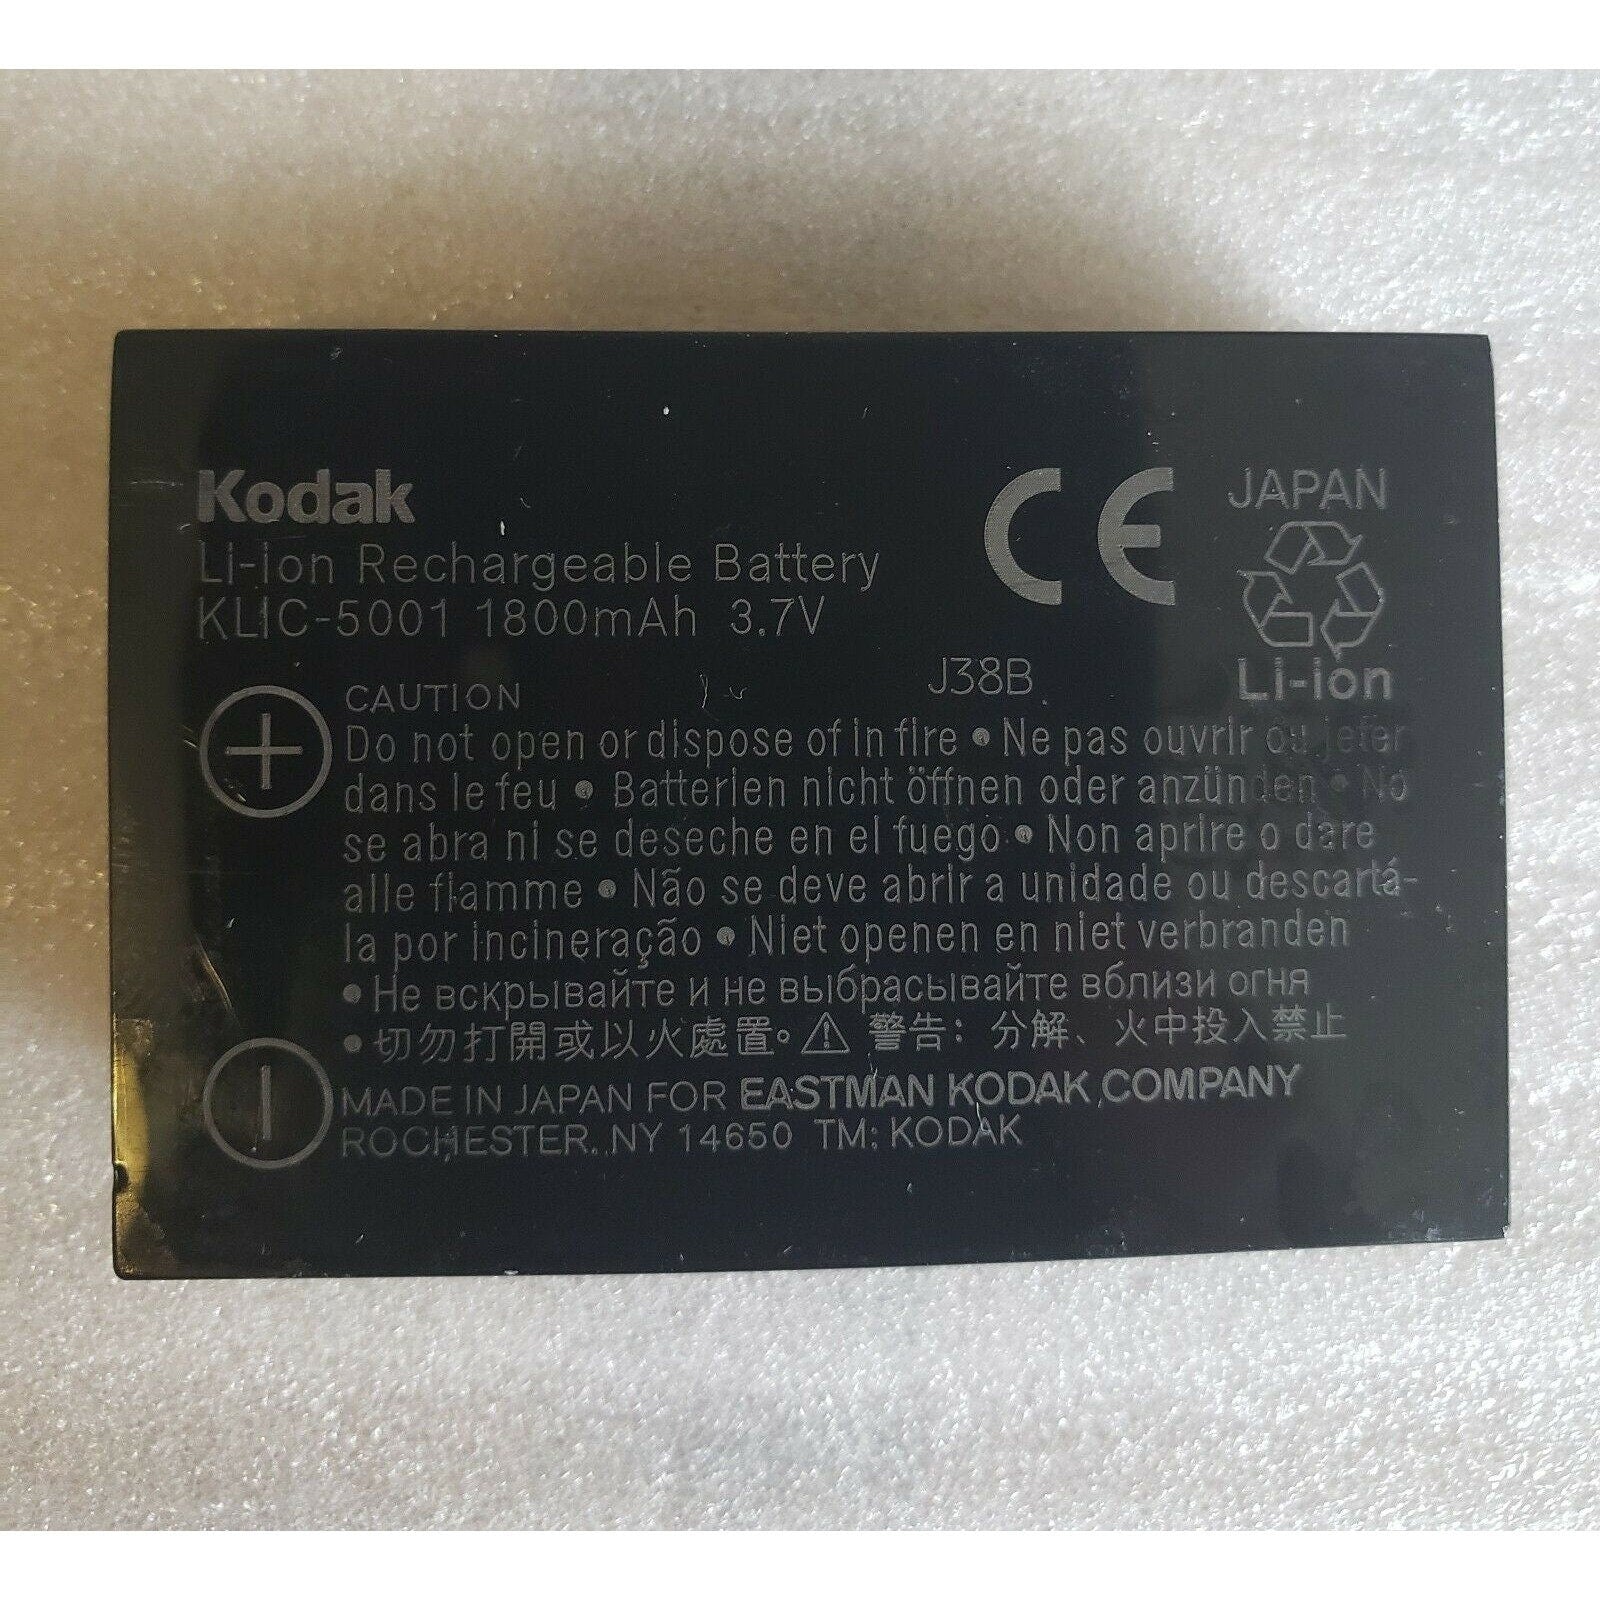 Kodak EasyShare Camera Battery KLIC-5001